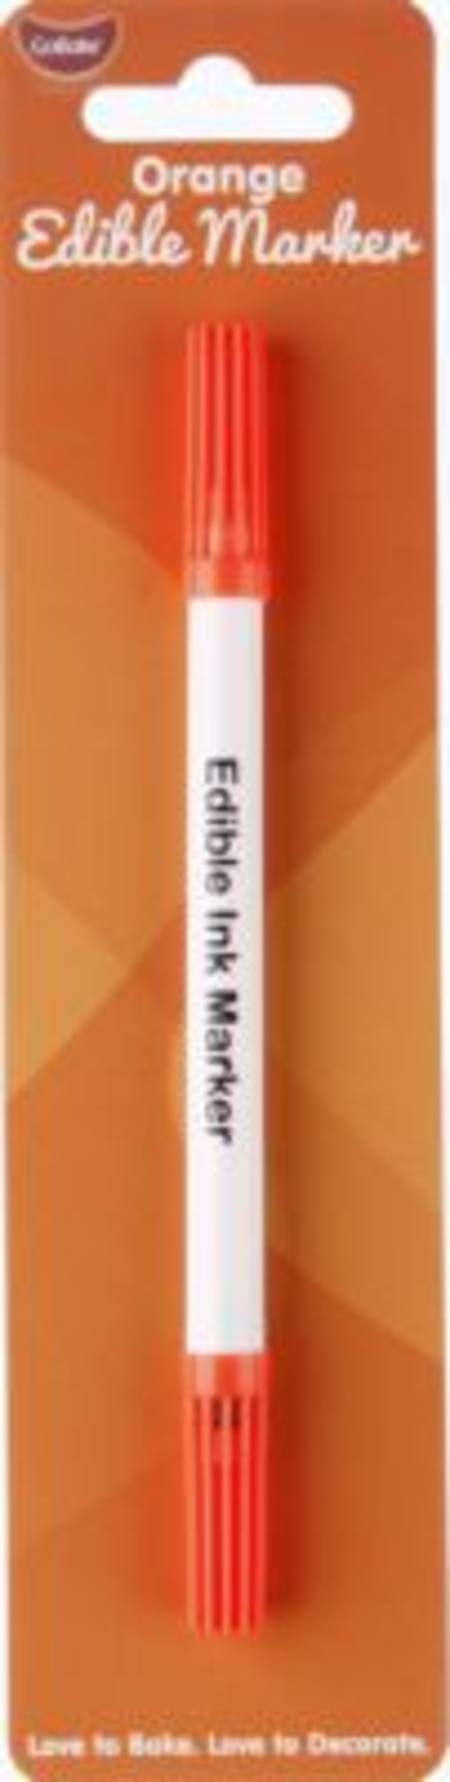 Buy Edible Marker Pen Orange in NZ. 